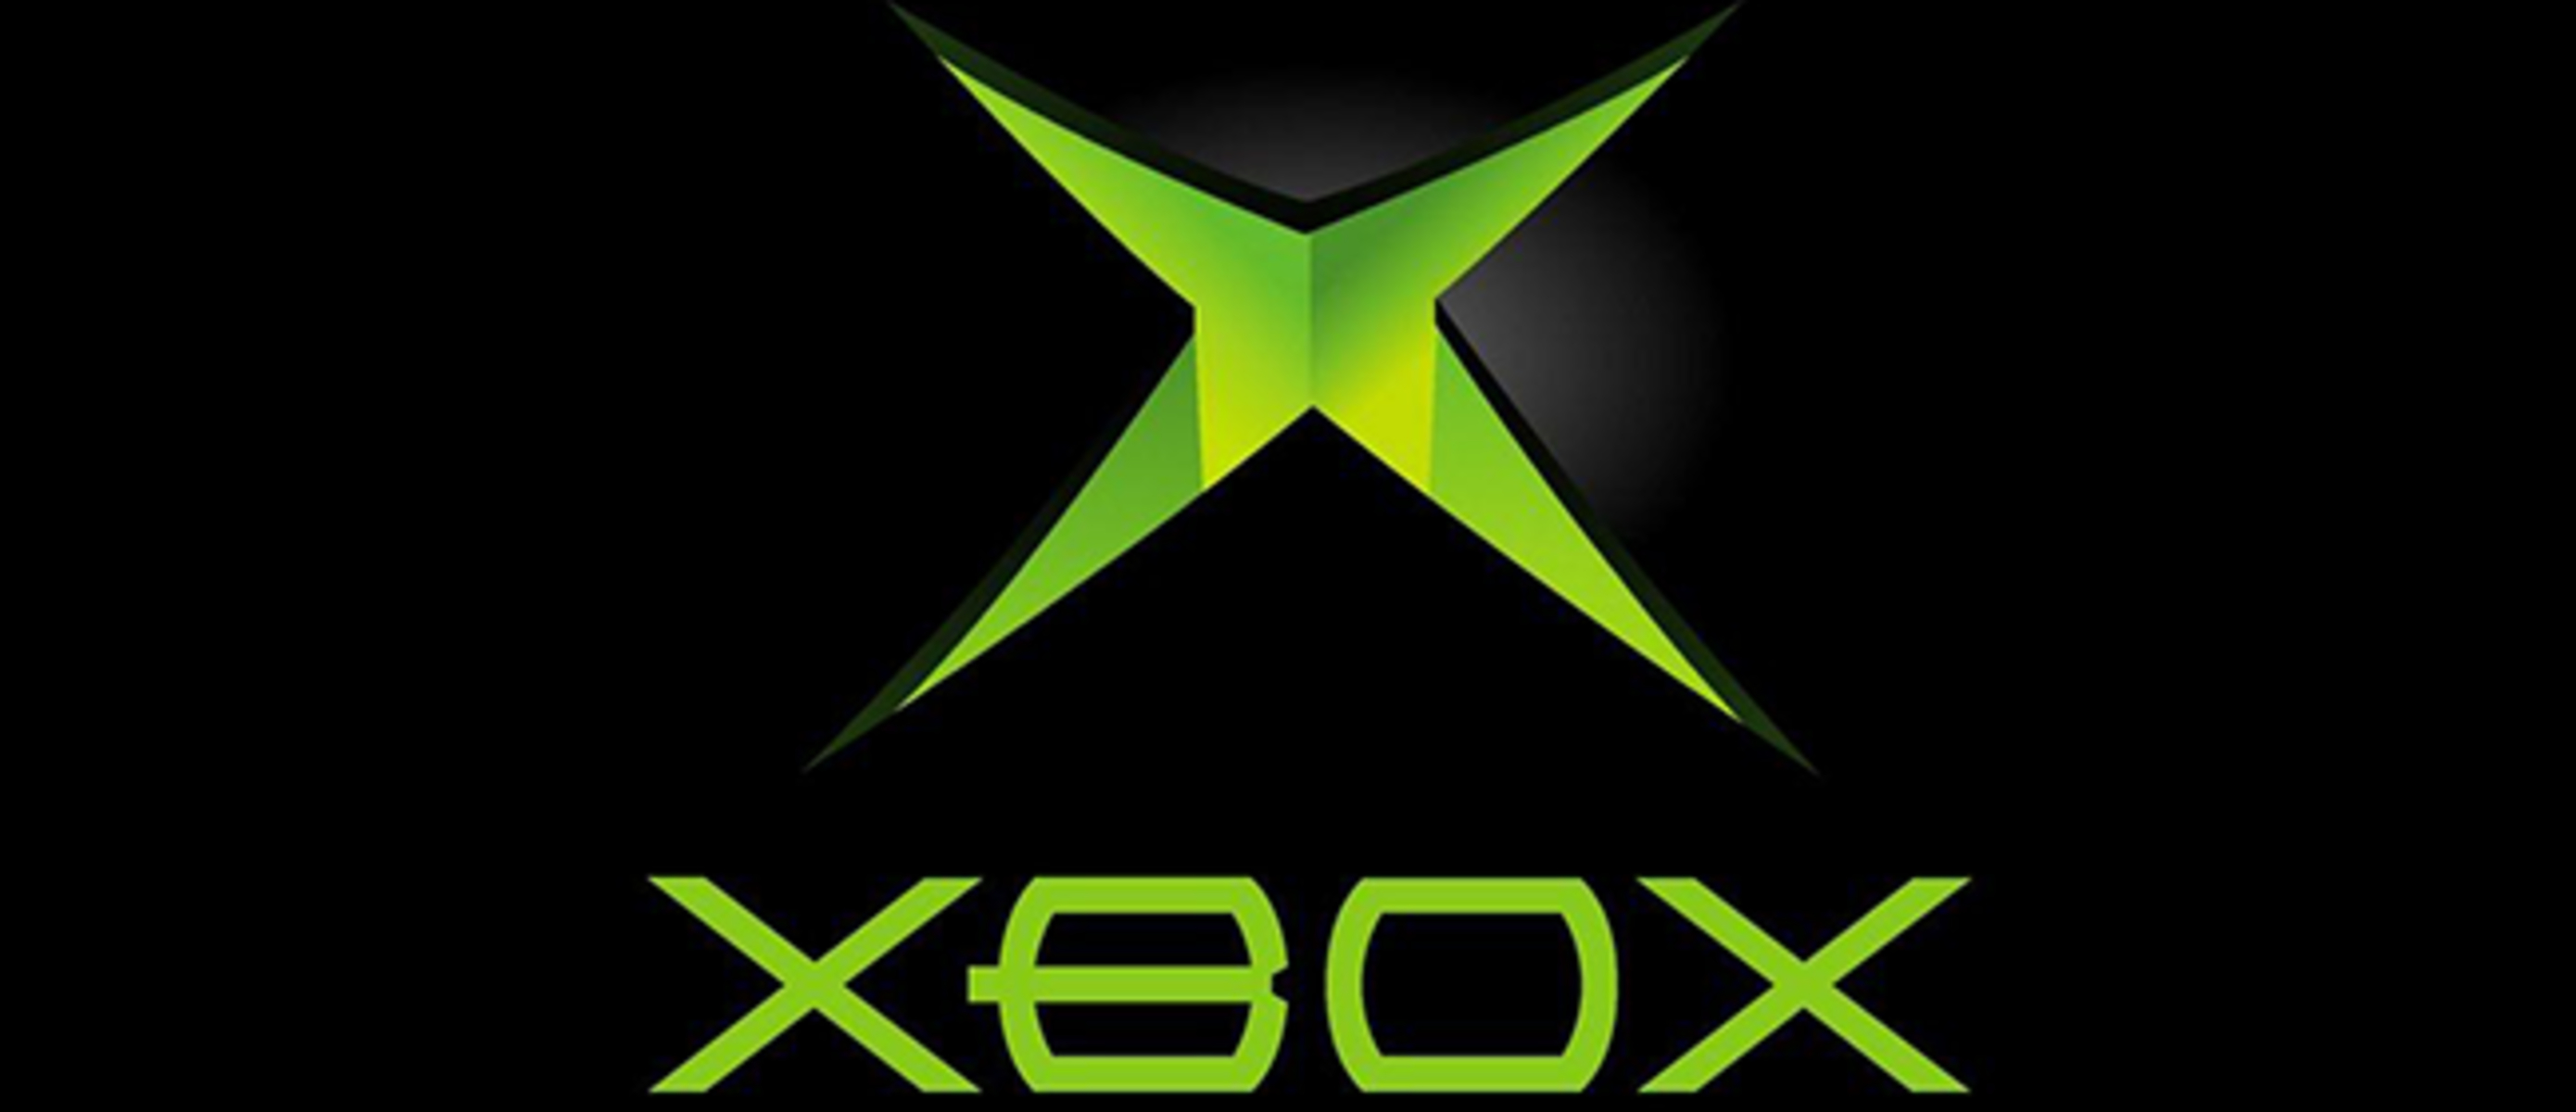 Os master. Xbox Original logo.